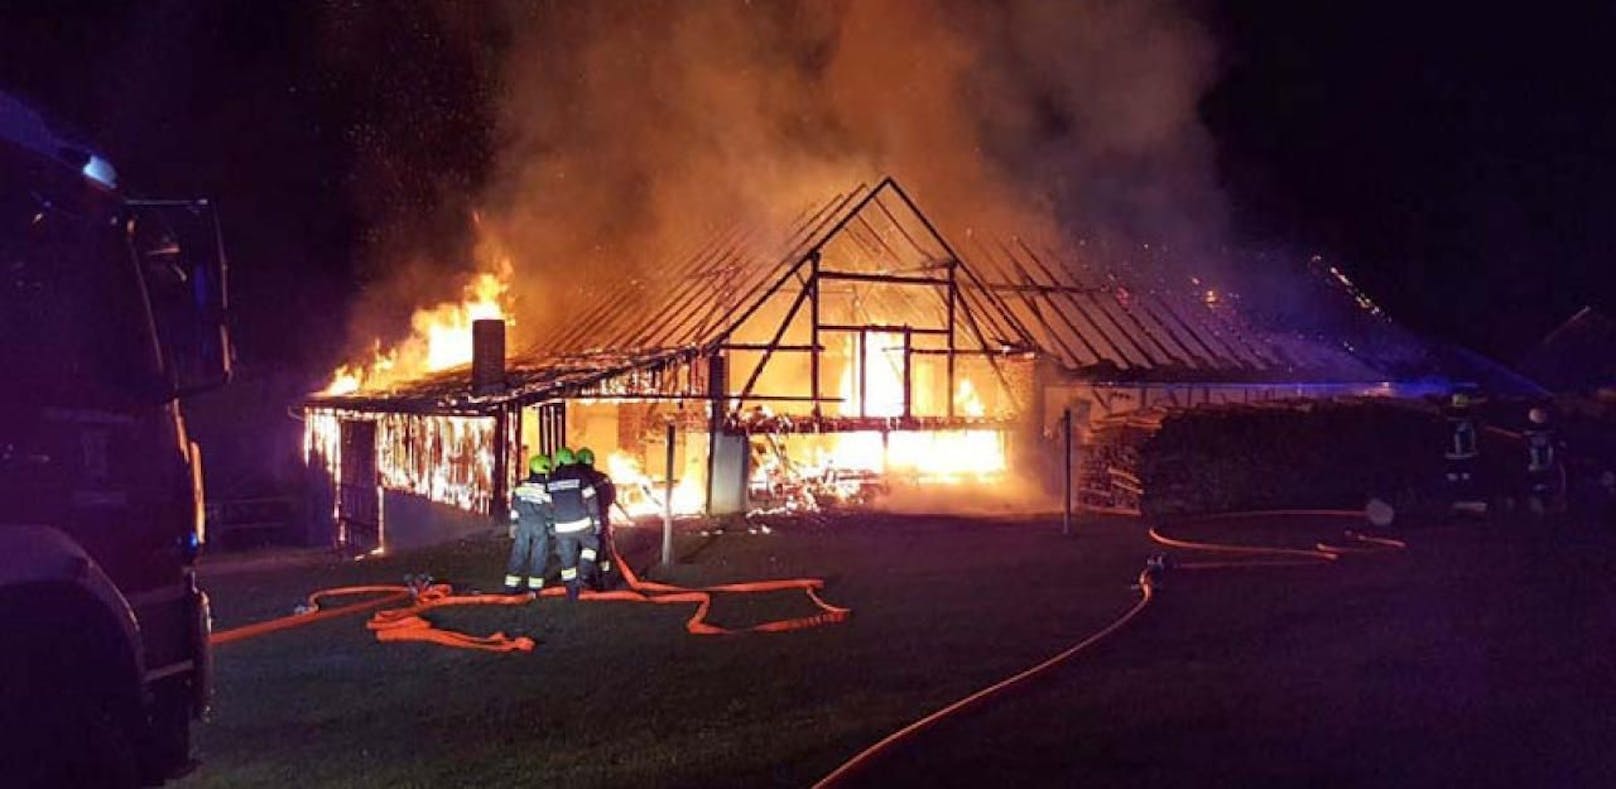 Großbrand im Waldviertel: Bauernhof in Flammen